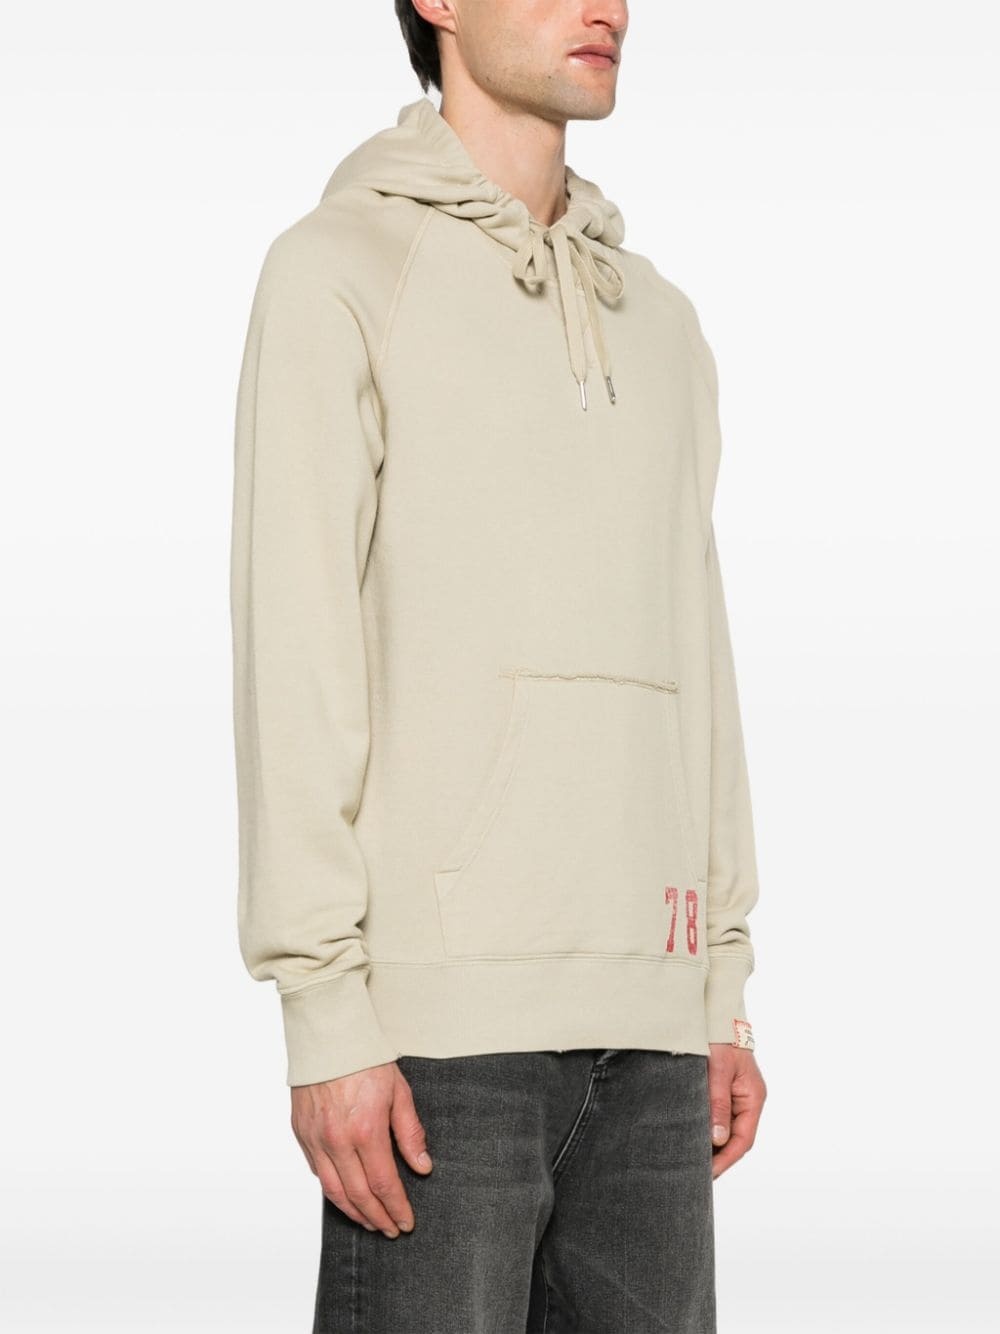 number-print cotton hoodie - 3